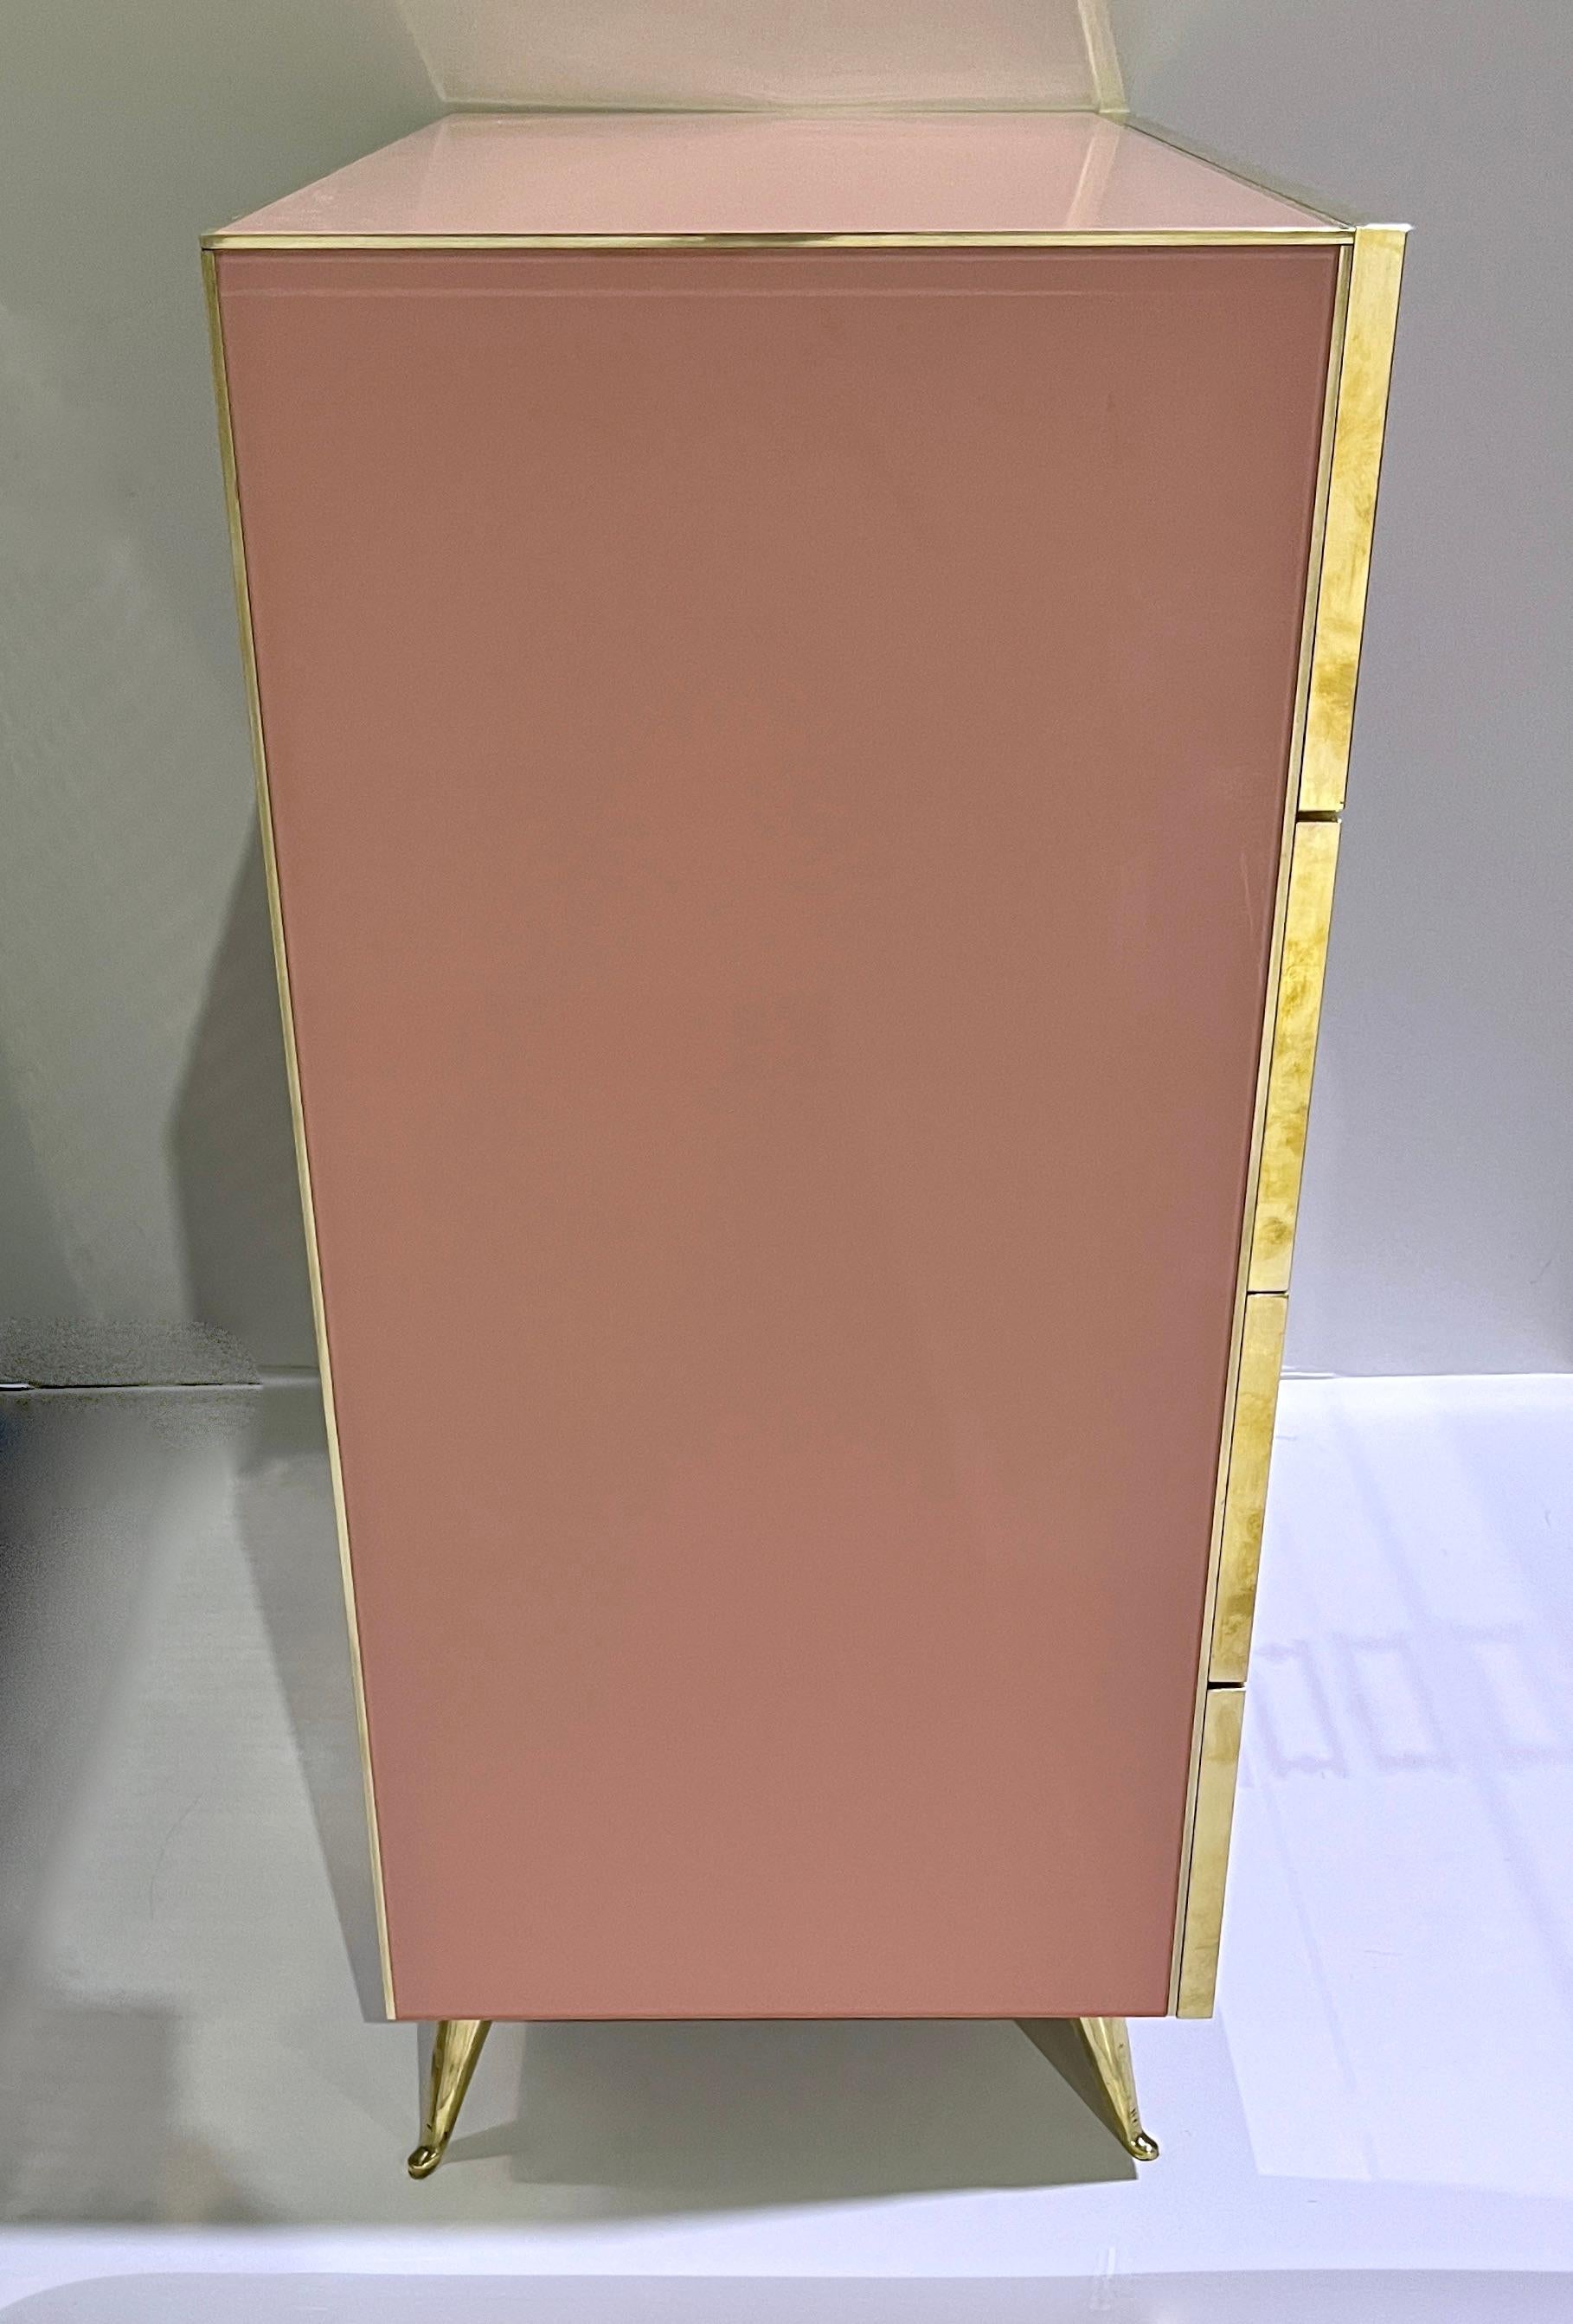 Coffre à semainier à 4 tiroirs en verre, rose blush blanc, post-moderne italien sur mesure en vente 4